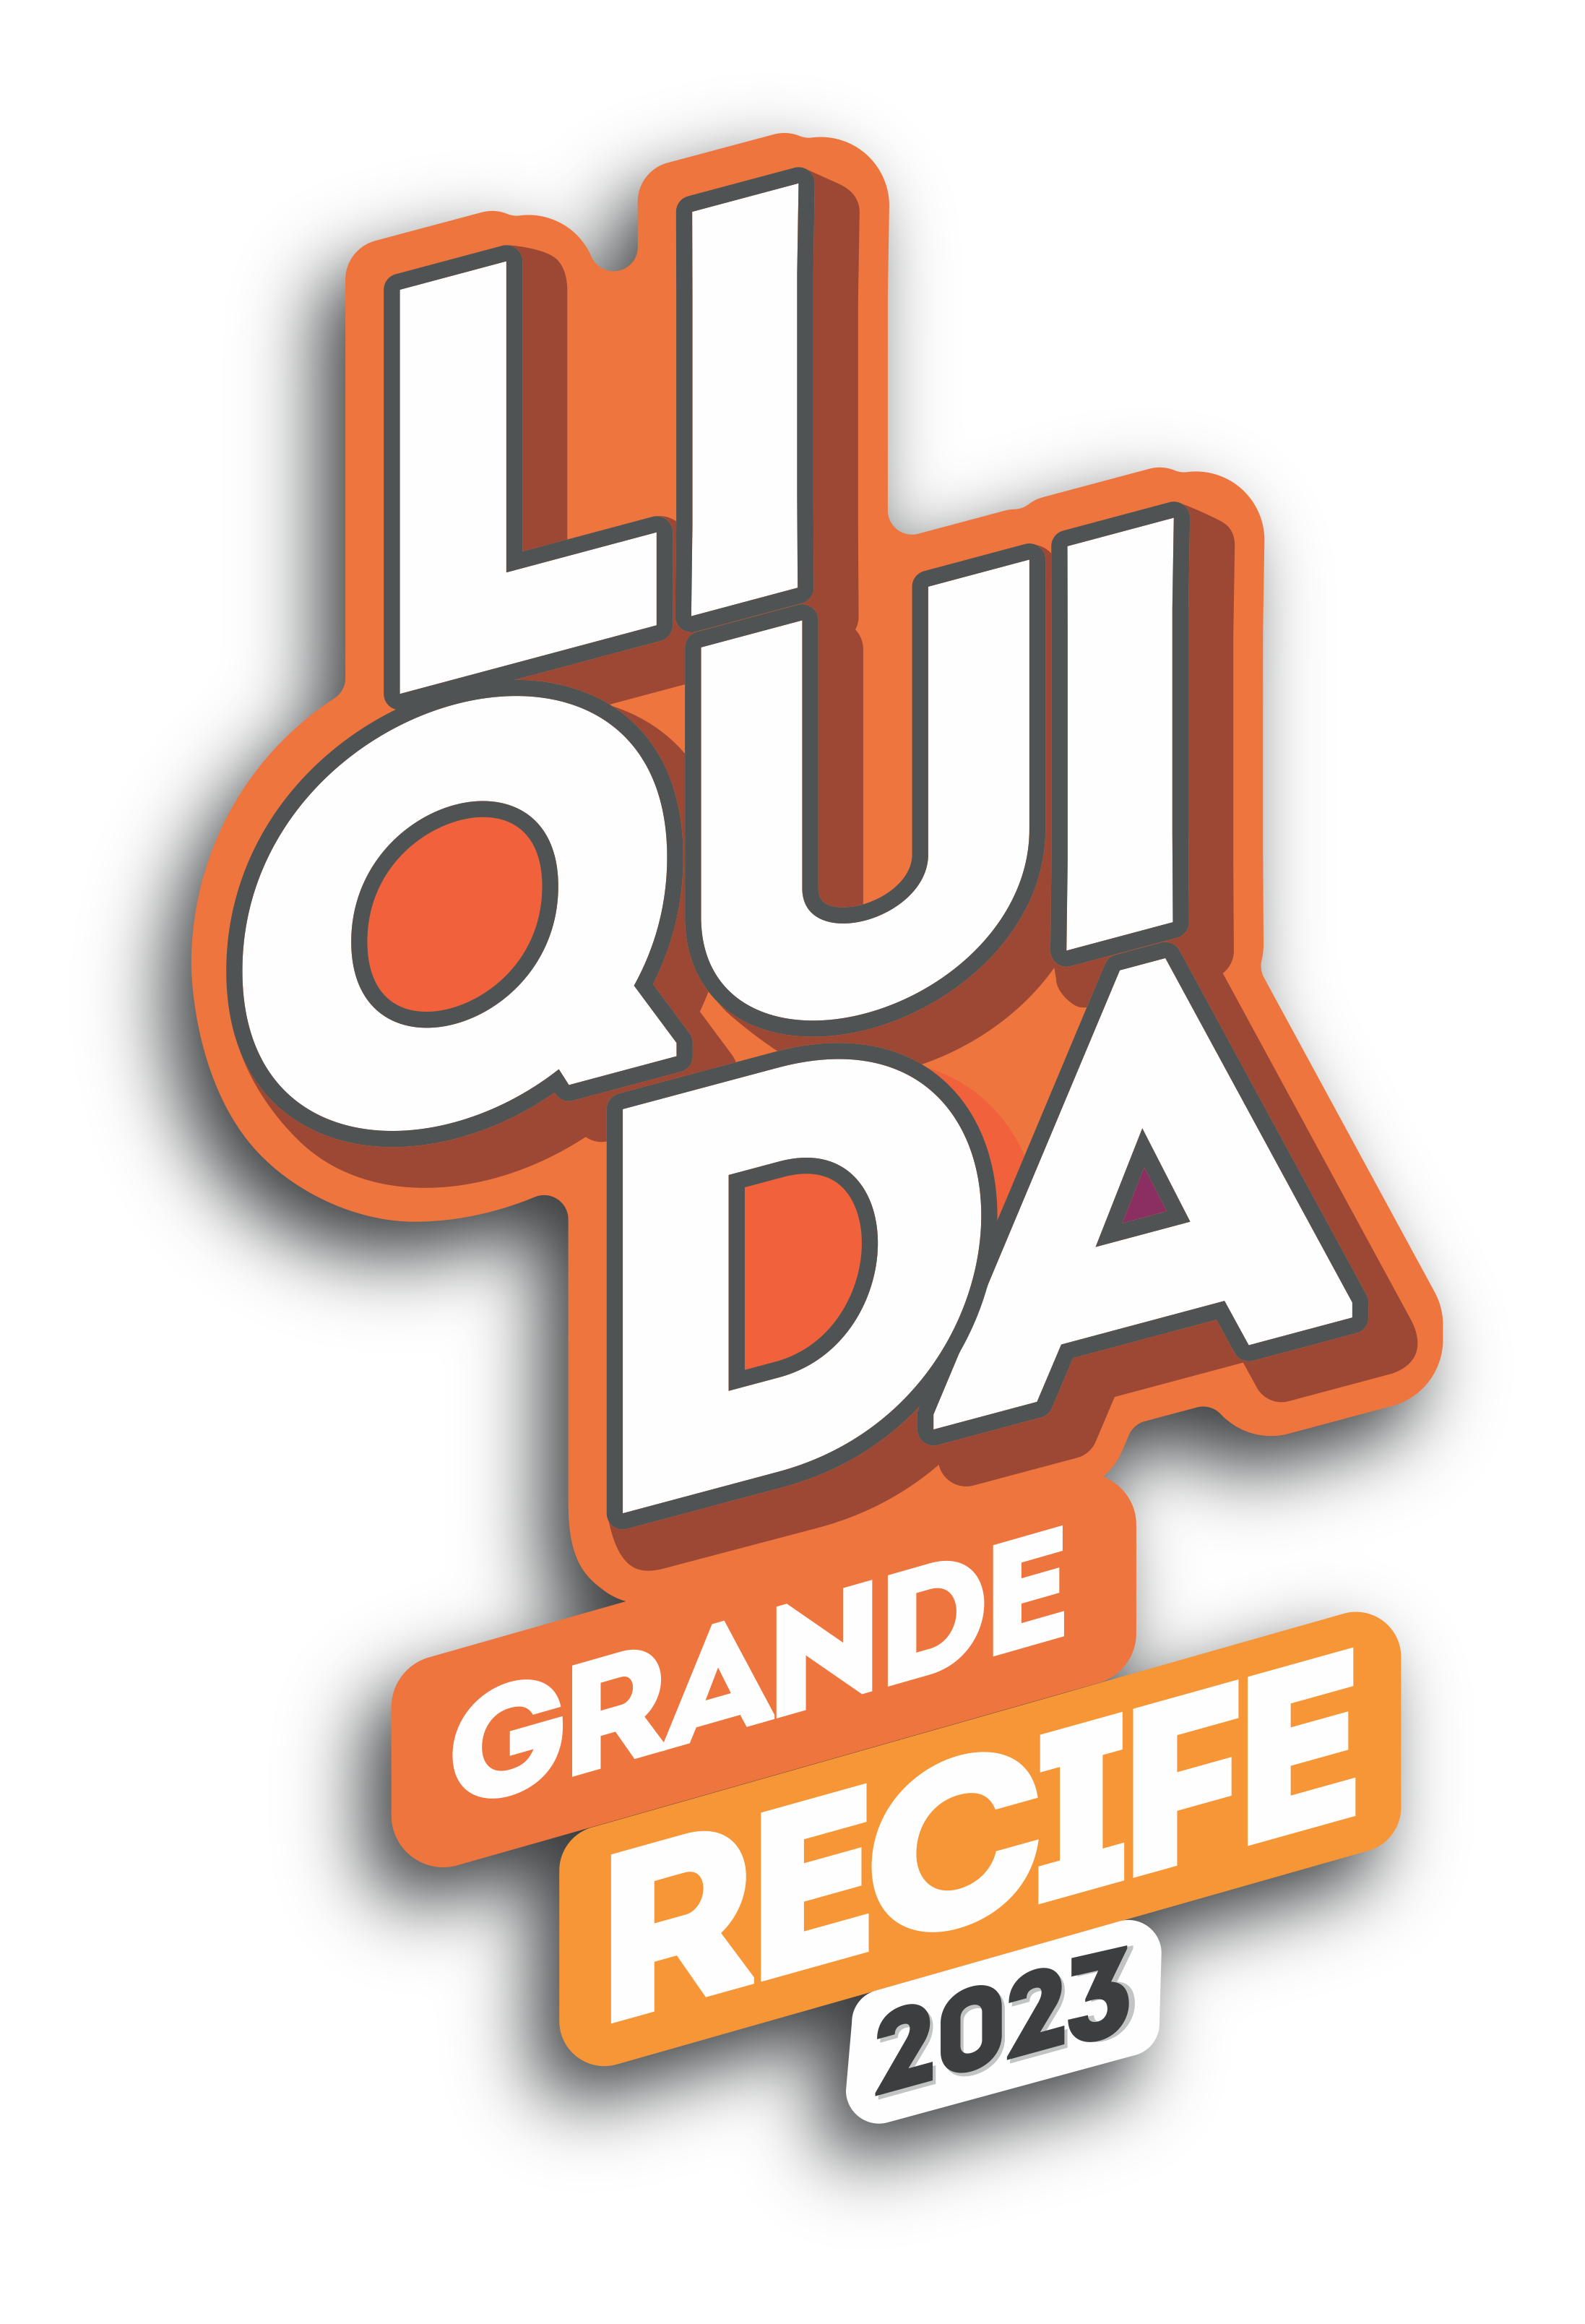 Liquida Grande Recife